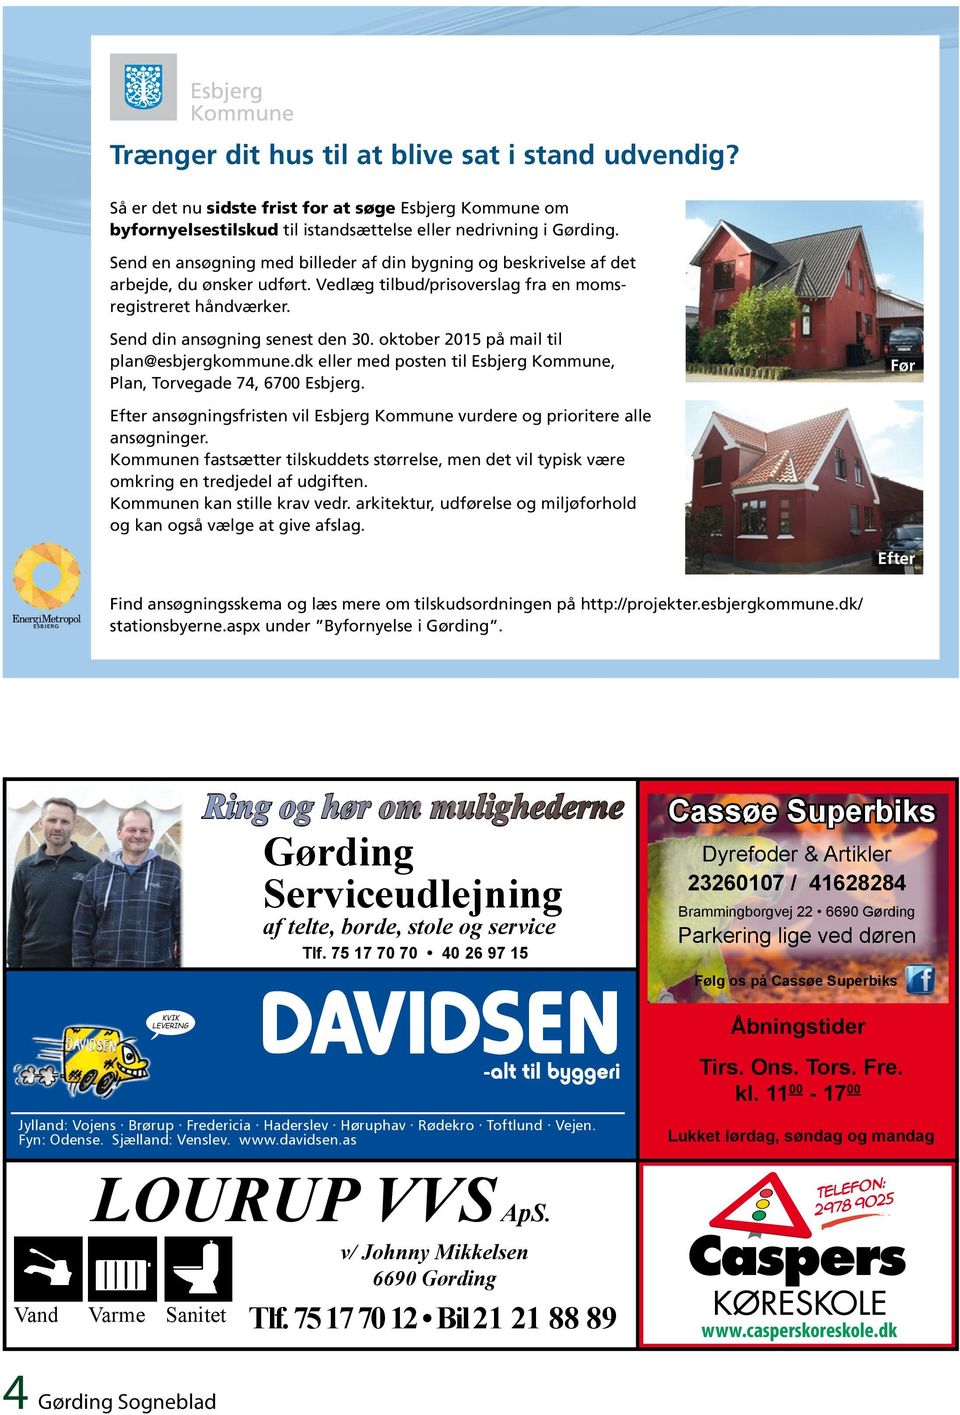 oktober 2015 på mail til plan@esbjergkommune.dk eller med posten til Esbjerg Kommune, Plan, Torvegade 74, 6700 Esbjerg.